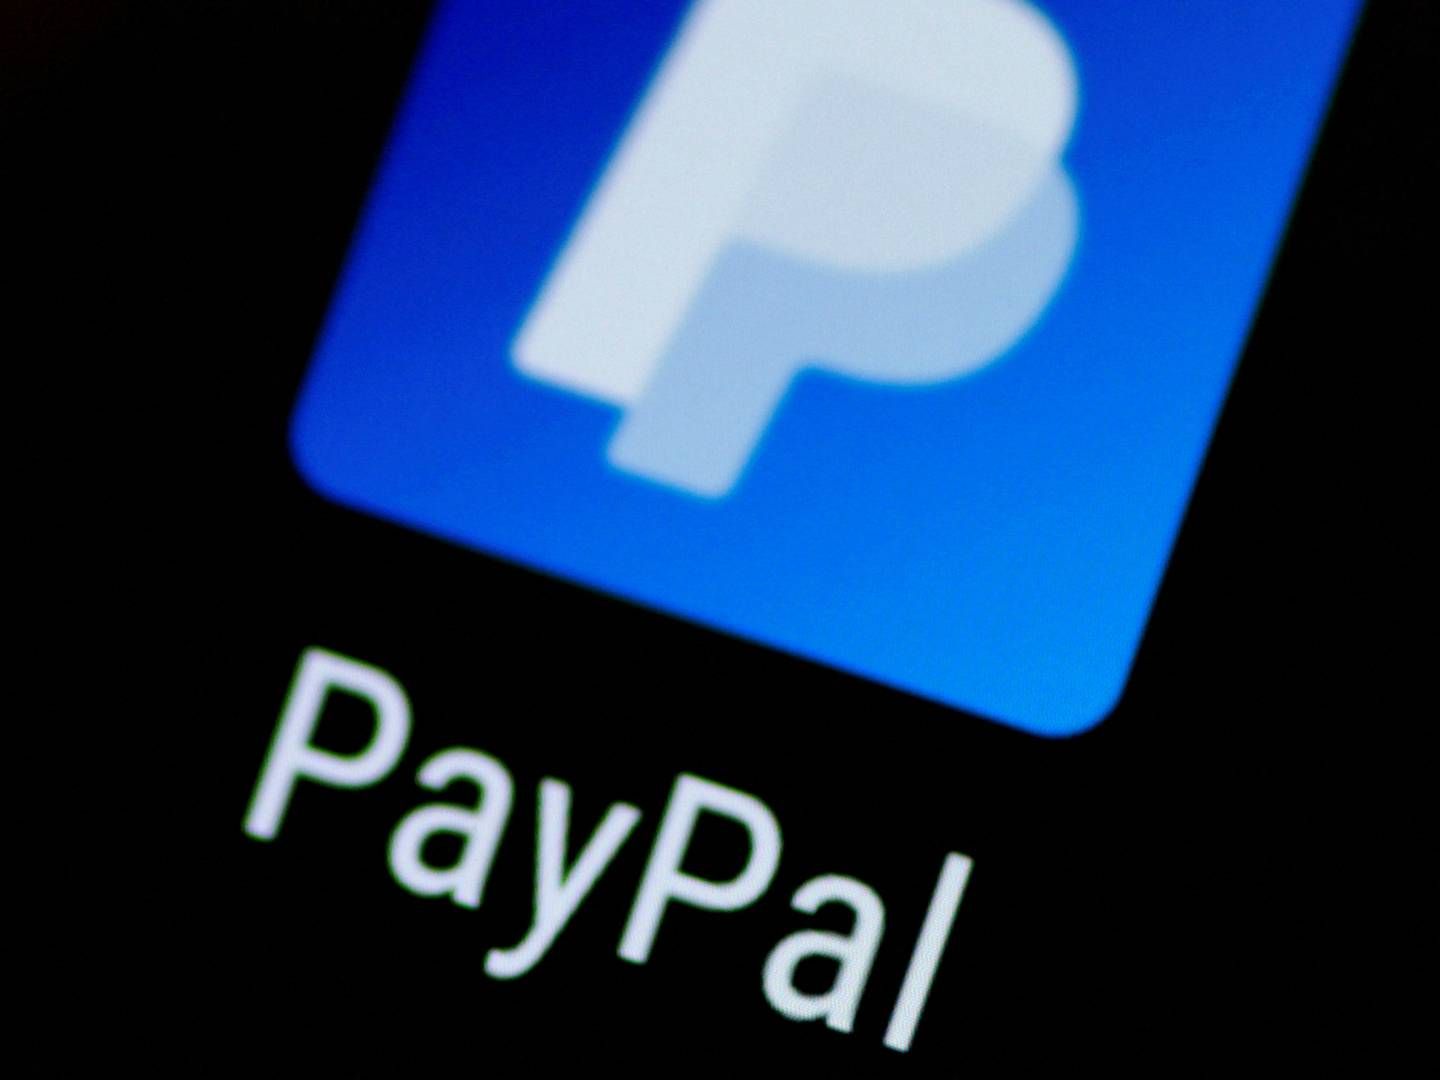 Paypal-aktien stiger efter positiv udvikling. | Foto: THOMAS WHITE/REUTERS / X90030